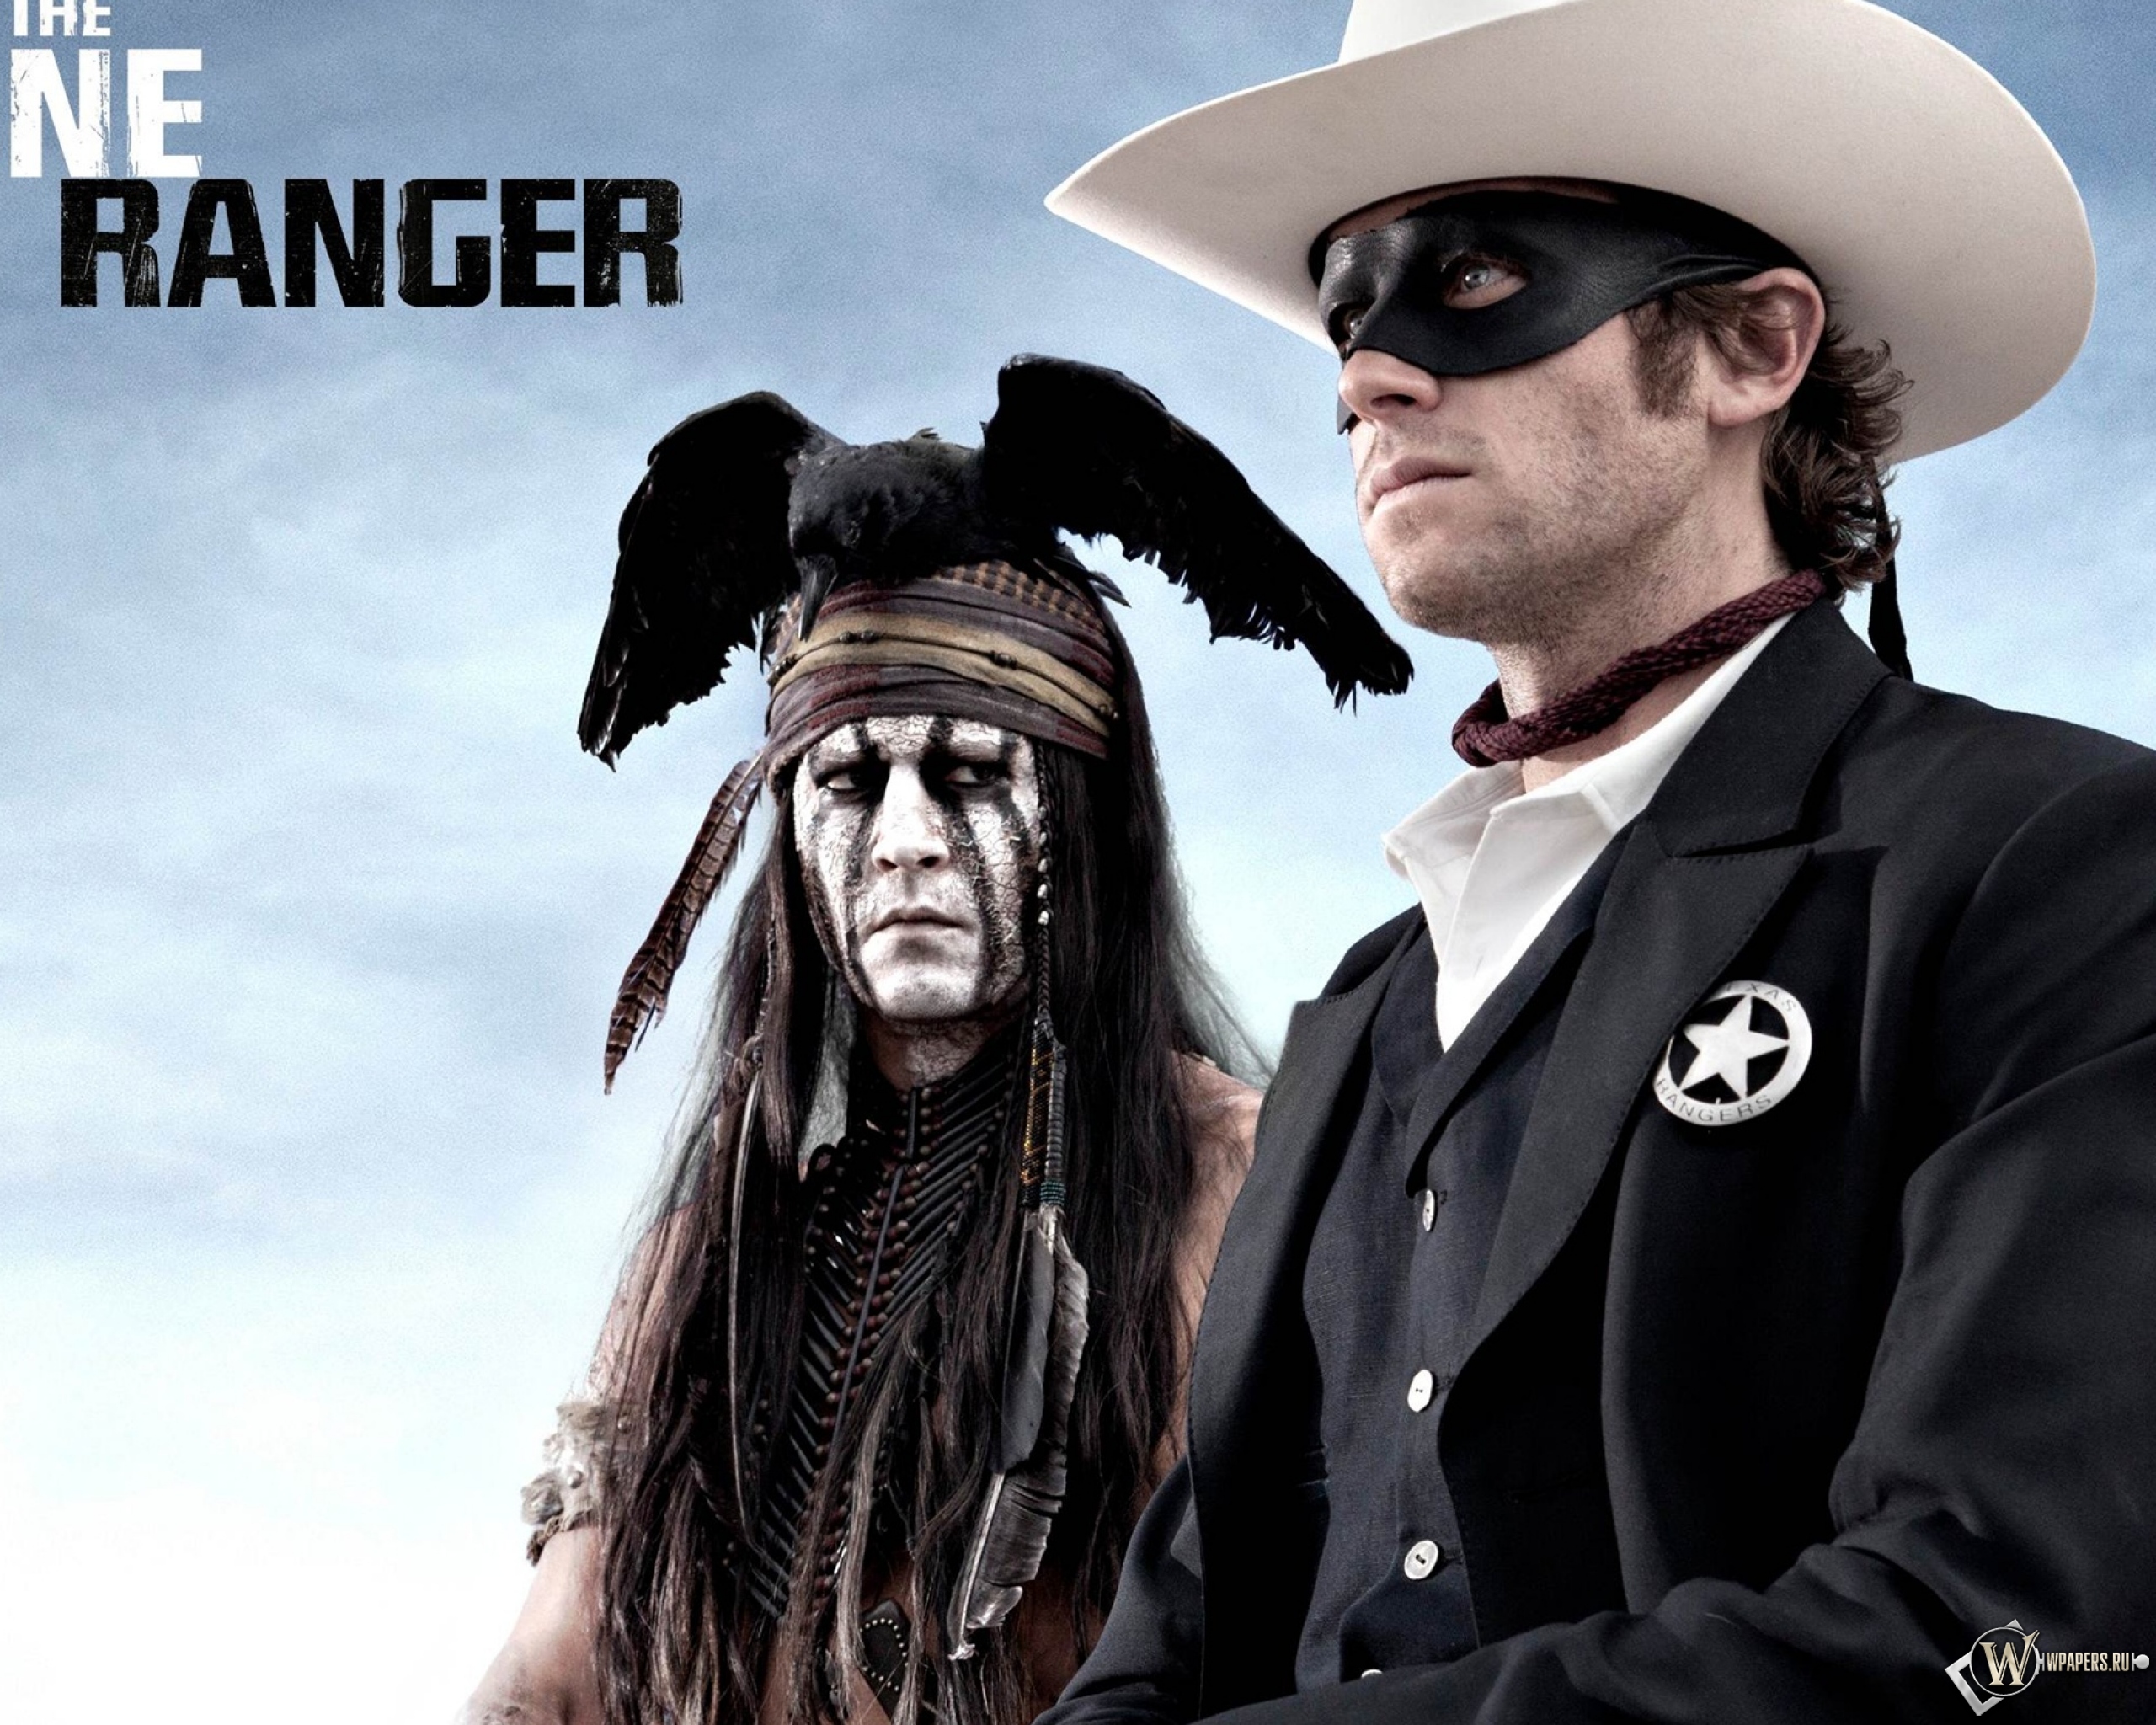 Главные роли джонни деппа. Одинокий рейнджер / the Lone Ranger (2013). Johnny Depp одинокий рейнджер. АРМИ Хаммер одинокий рейнджер. Джонни Депп одинокий рейнджер фото.